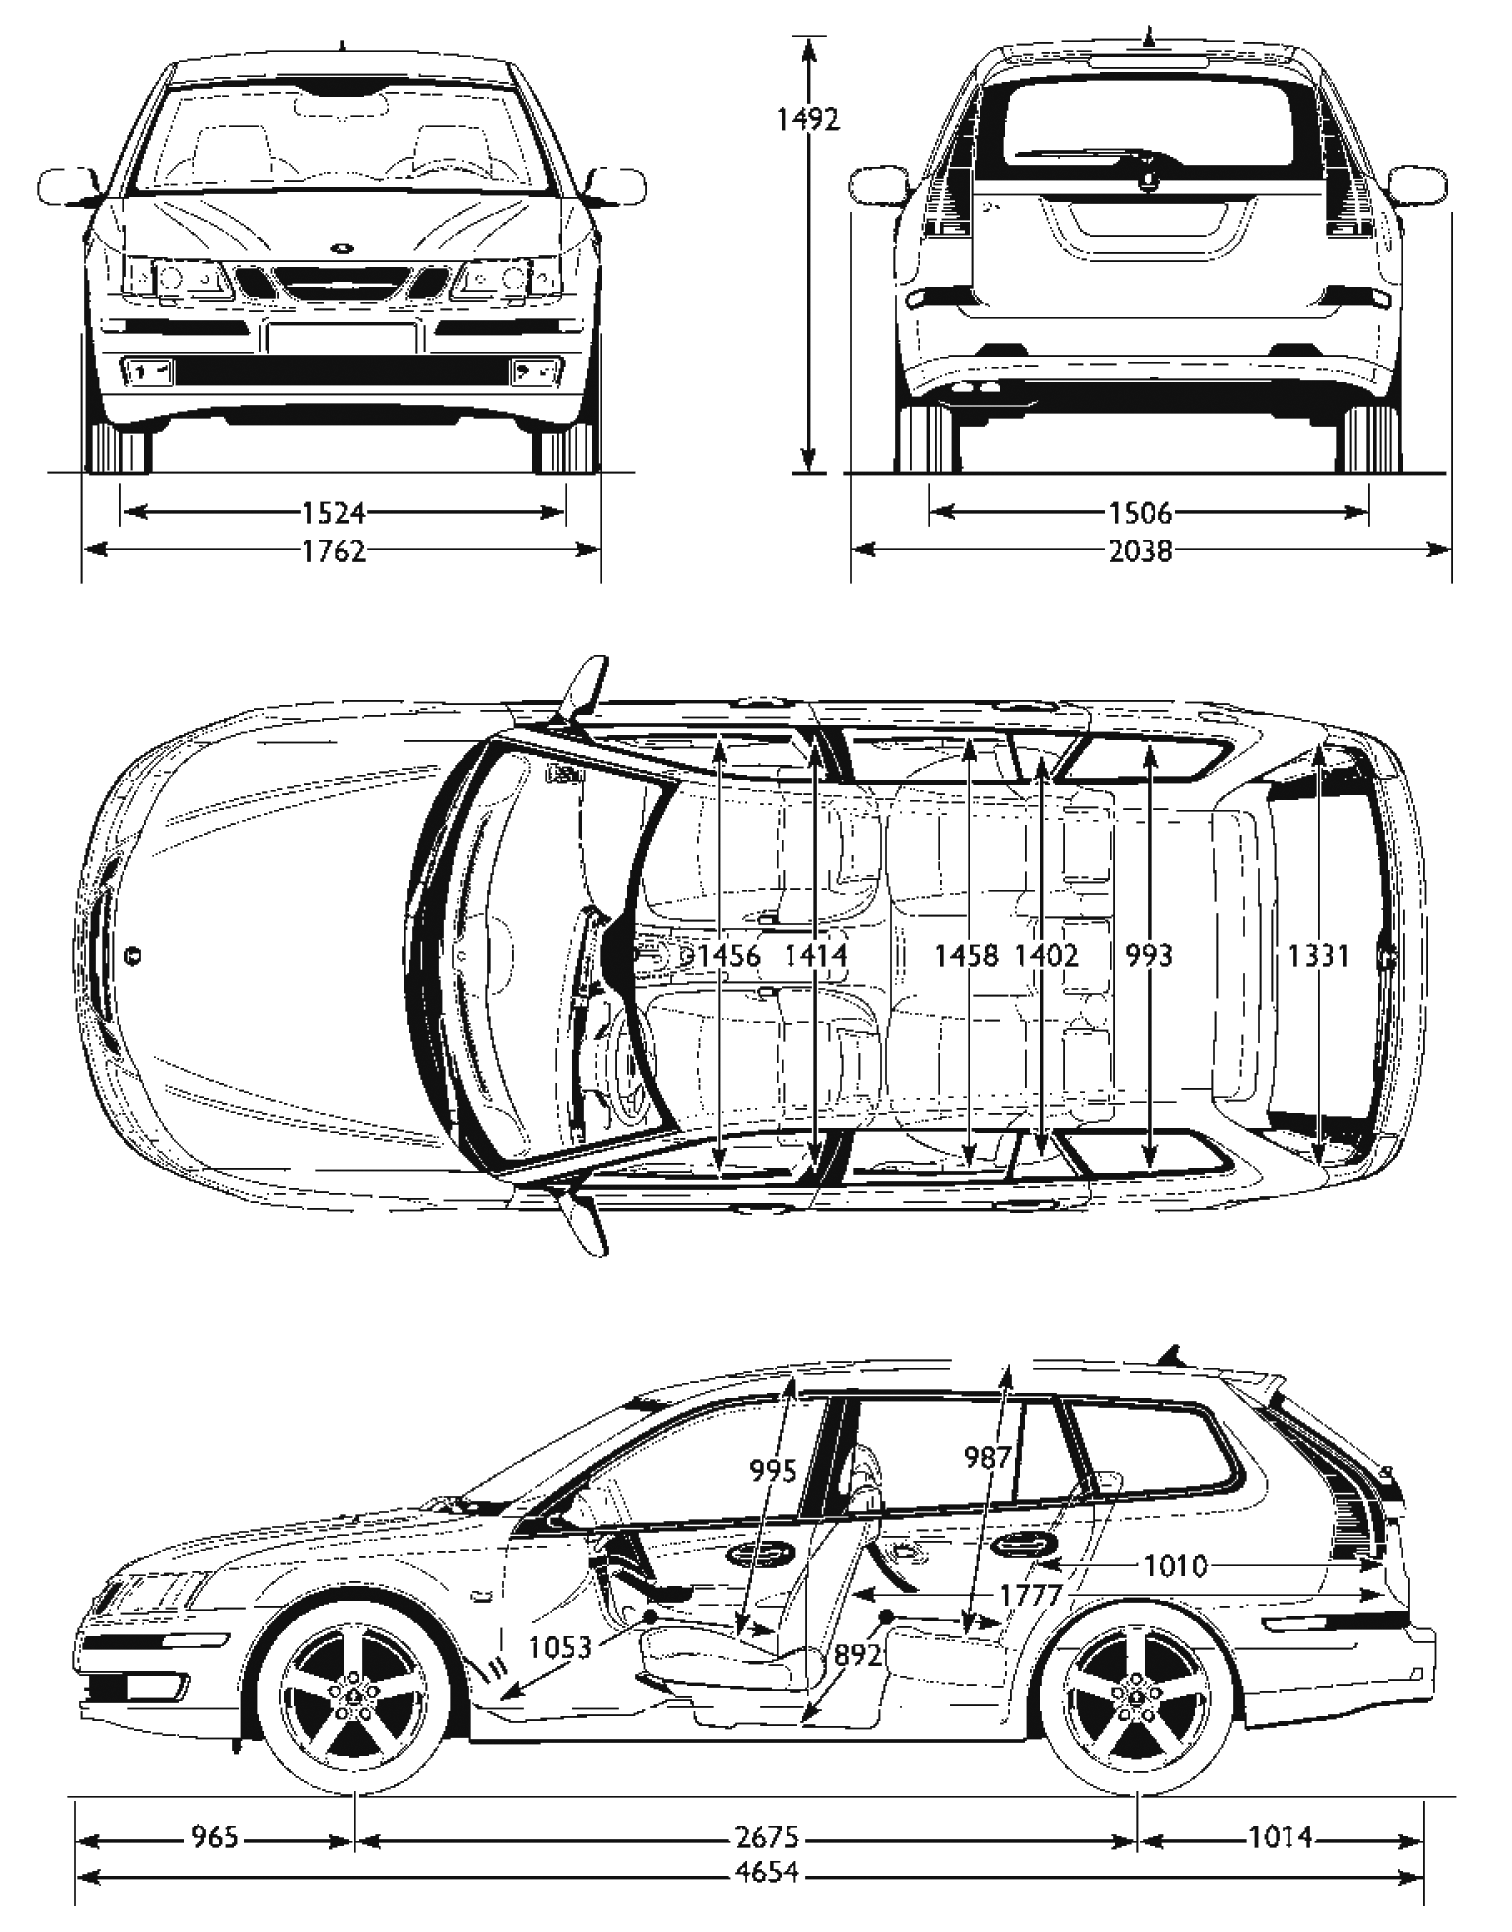 Saab 9-3 Estate blueprints